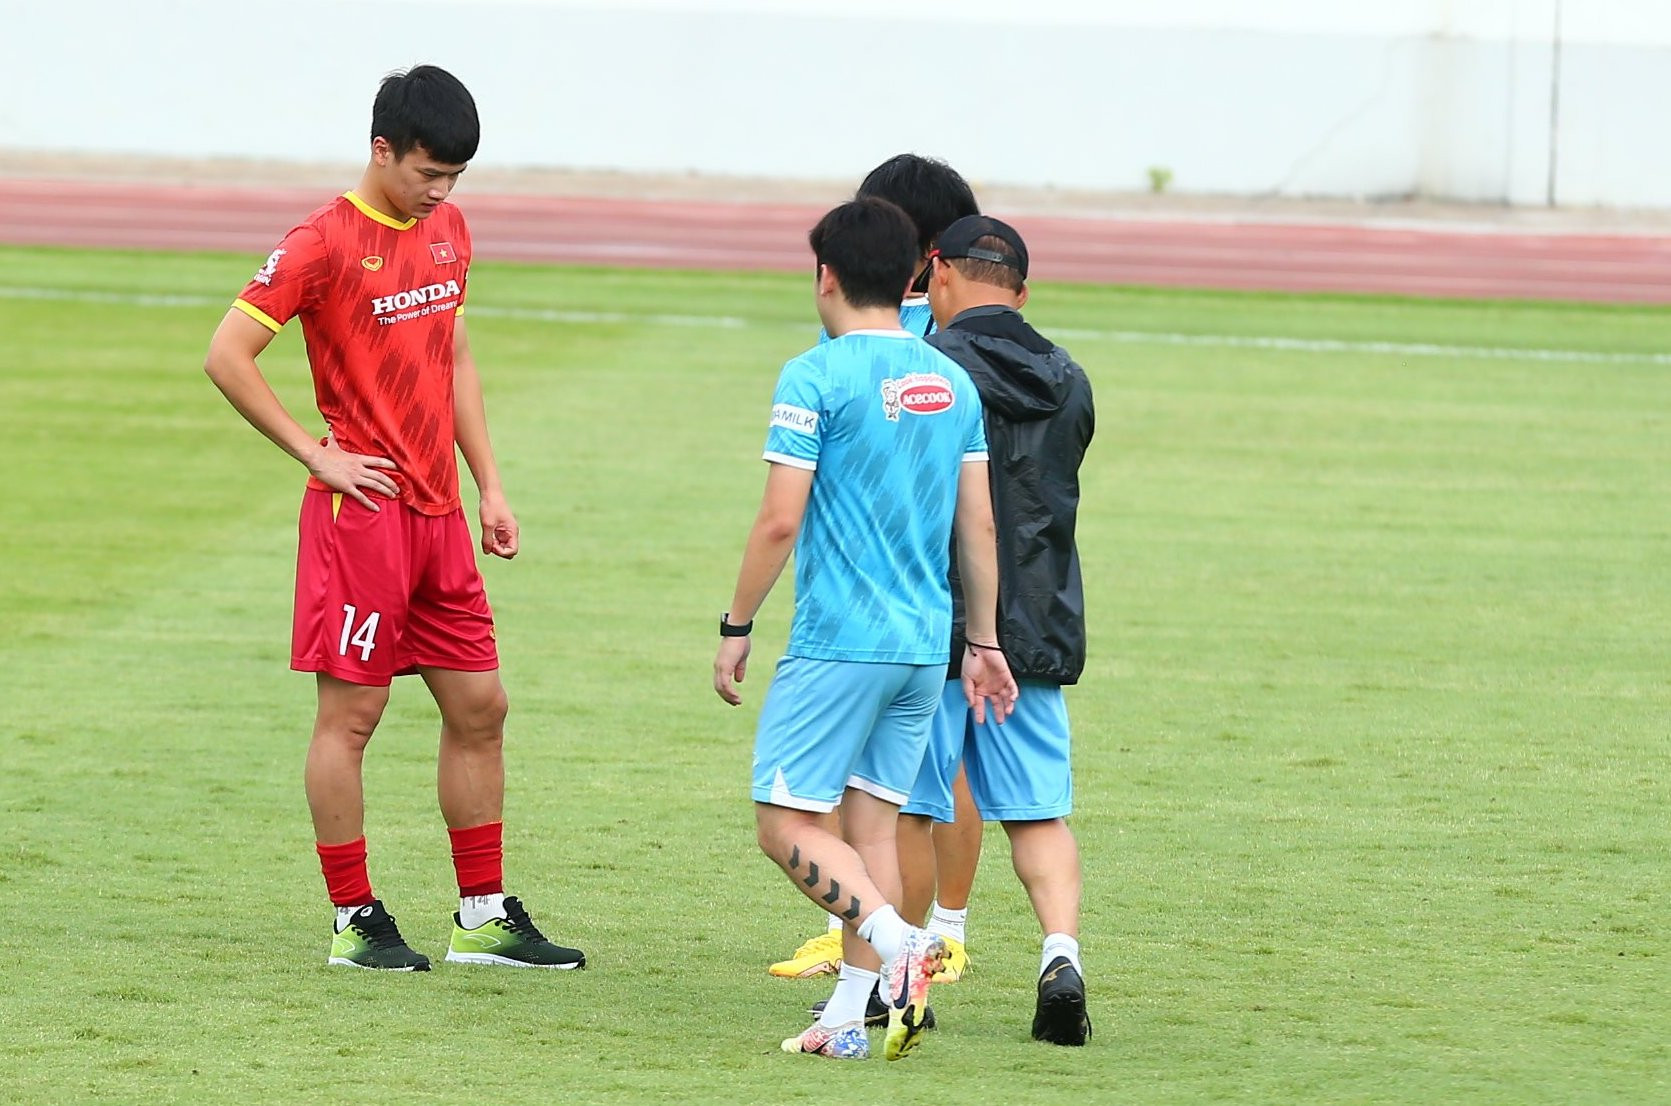 Khá lo lắng cho học trò, HLV Park Hang Seo đã gọi Hoàng Đức ra hỏi han kỹ lưỡng về chấn thương khiến tiền vệ này bỏ lỡ trận đấu đối kháng nội bộ của đội nhà.
Rất may, Hoàng Đức chỉ bị đau cơ đùi nhẹ và không ảnh hưởng nhiều đến chiến dịch AFF Cup lần thứ 2 trong sự nghiệp.